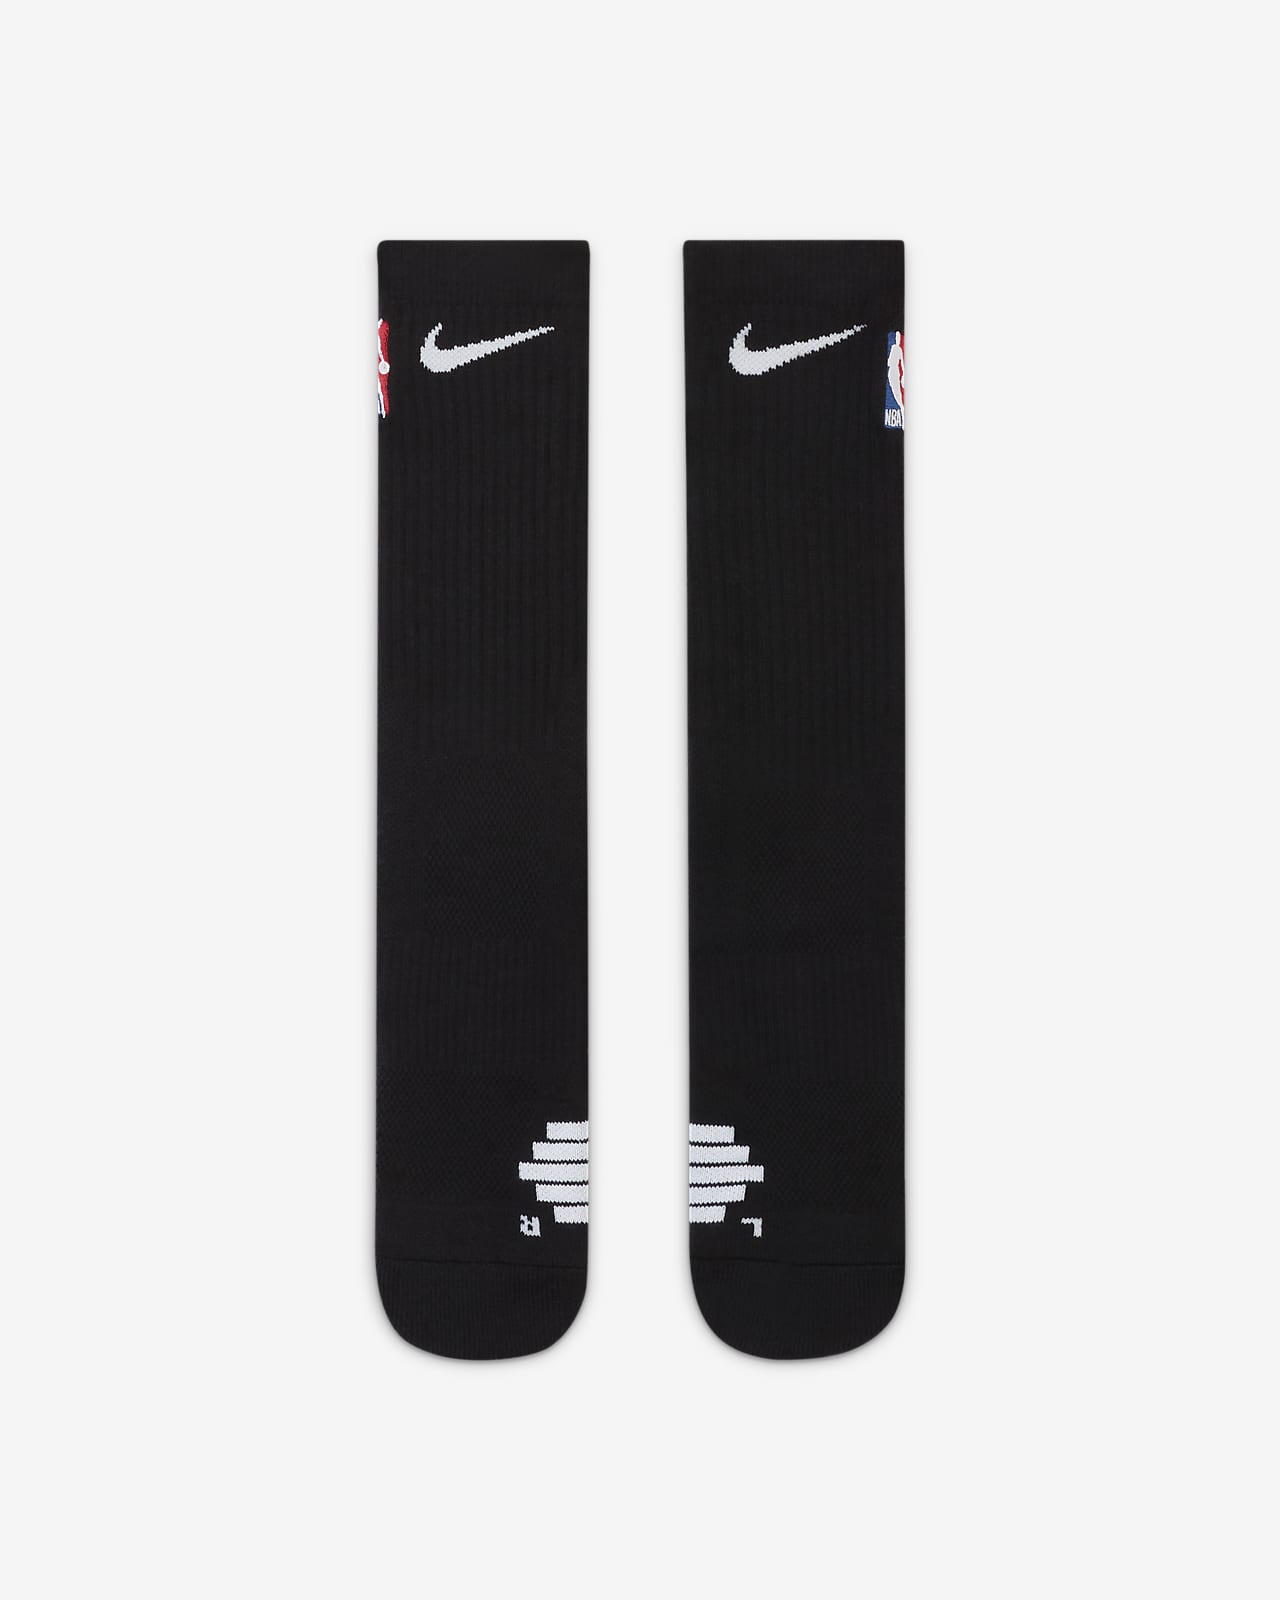 Nike NBA Elite Socks - Full and Mid - Brooklyn Nets Coogi Black and White